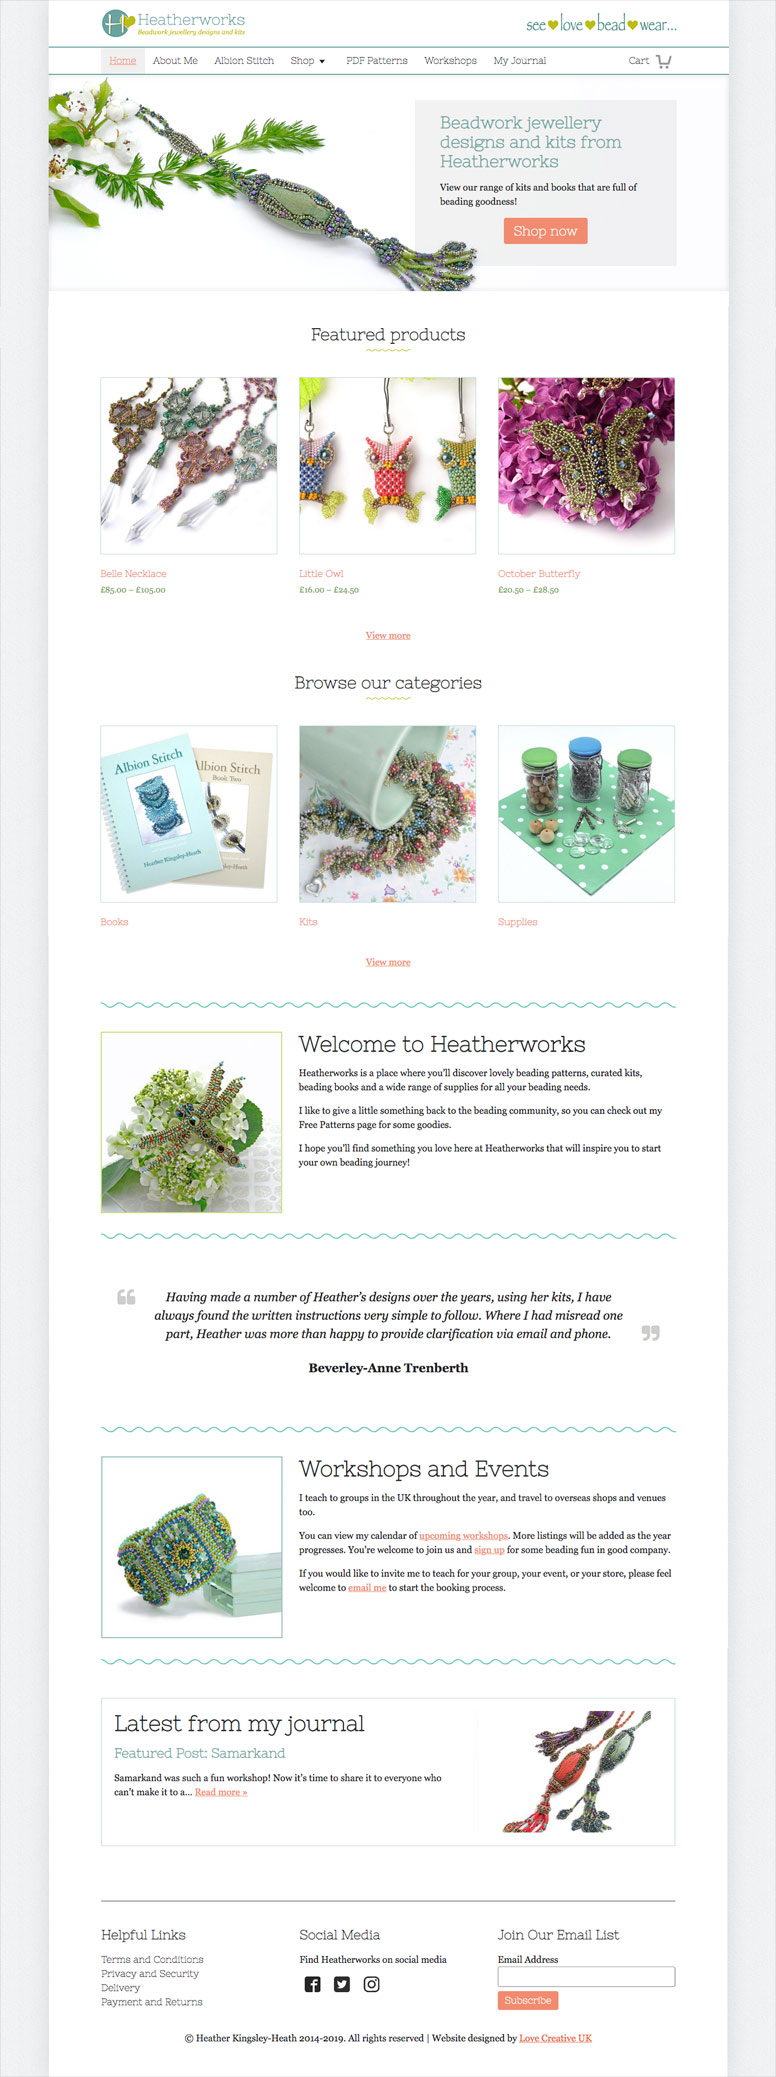 Heatherworks homepage website design refresh